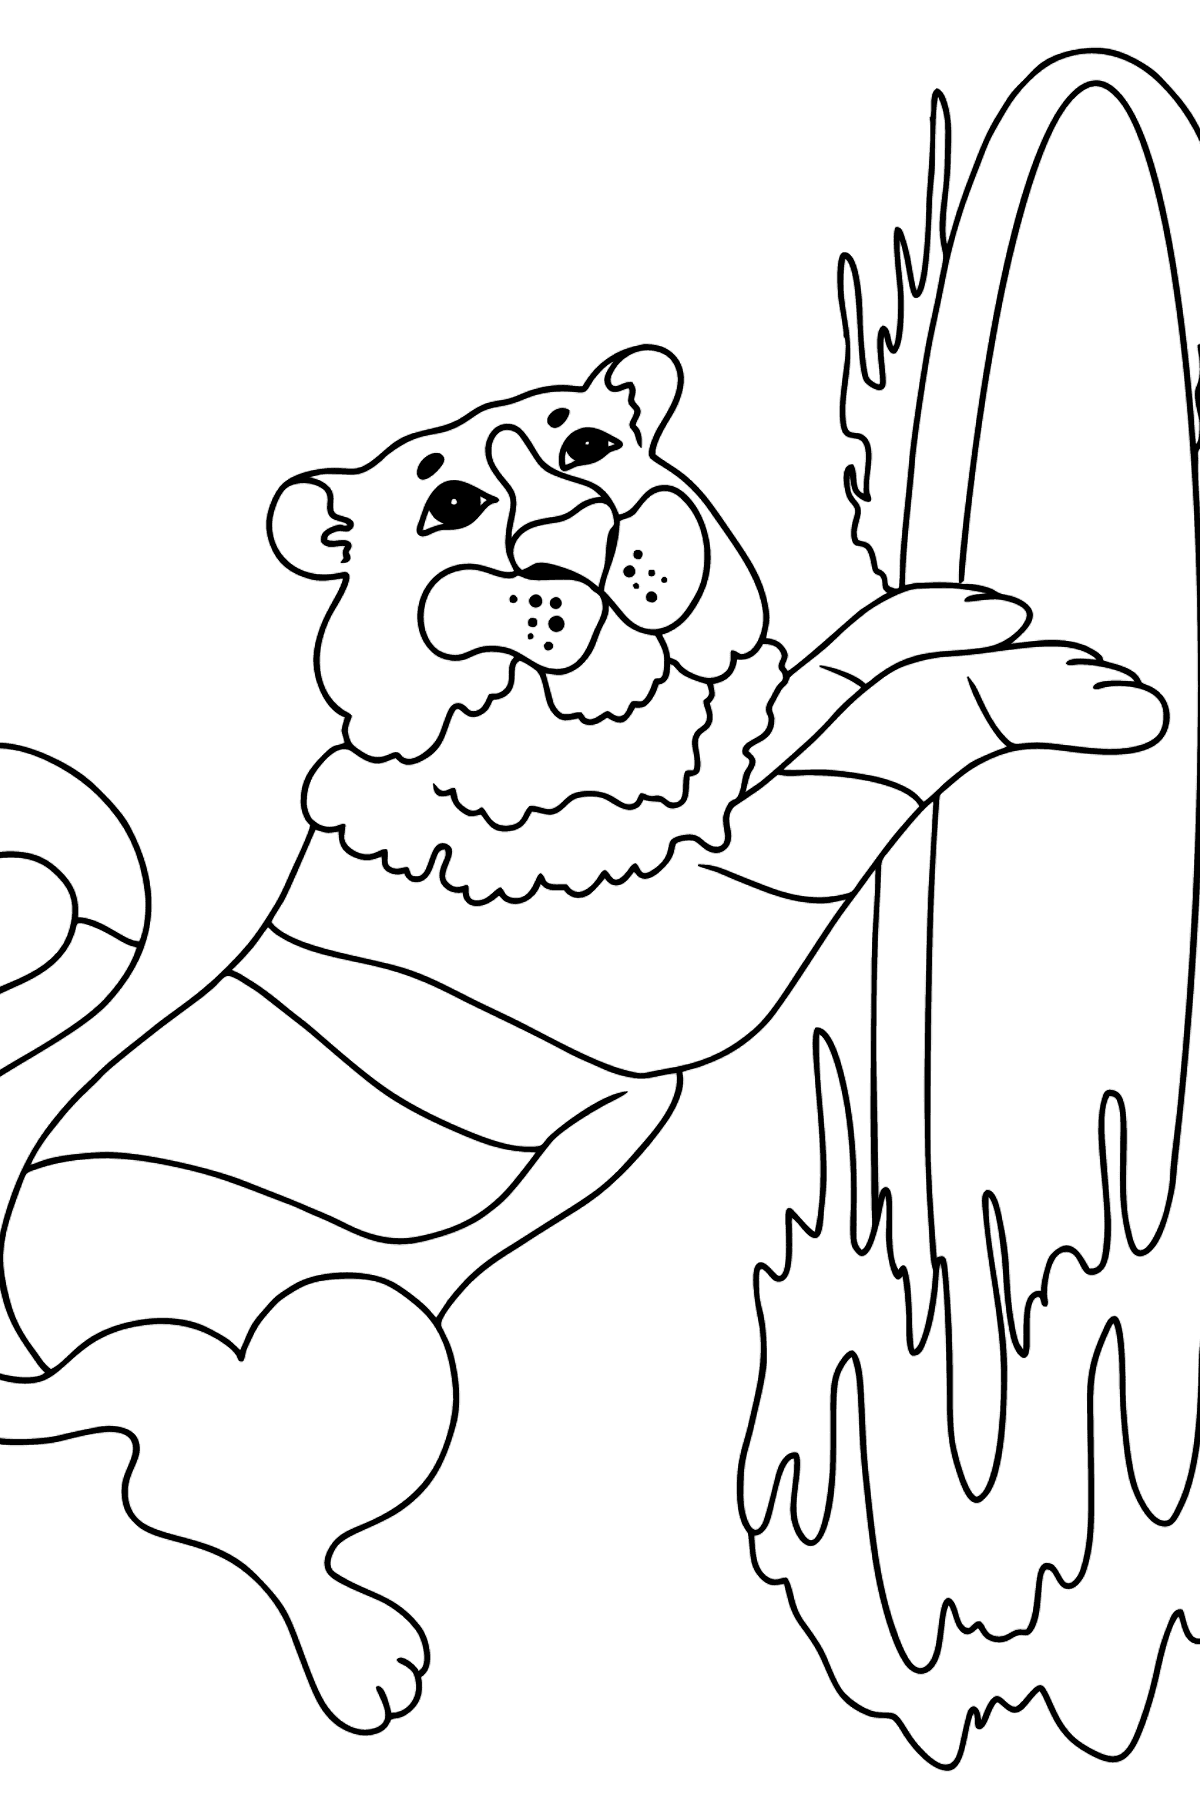 Desenho de tigre no circo para colorir - Imagens para Colorir para Crianças